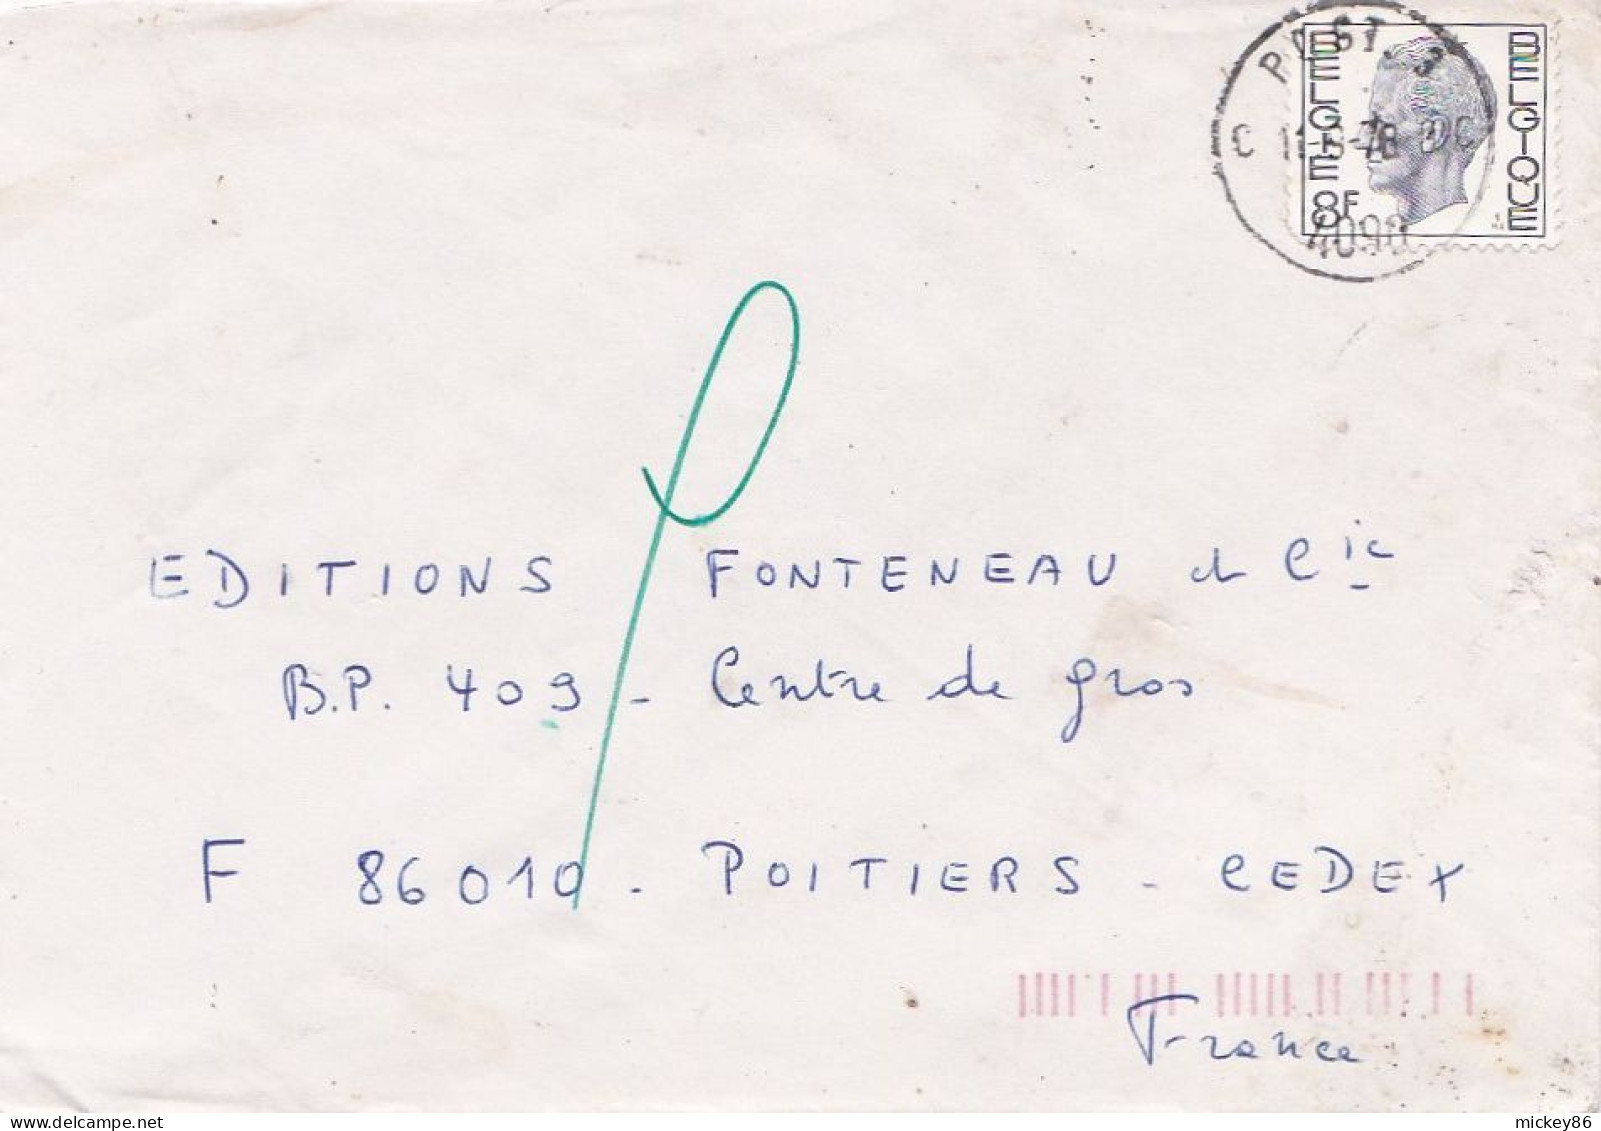 Belgique --1978--Lettre De POST 3  4090  Pour POITIERS (France)..timbre Seul Sur Lettre + Cachet  11-9-78 - Covers & Documents